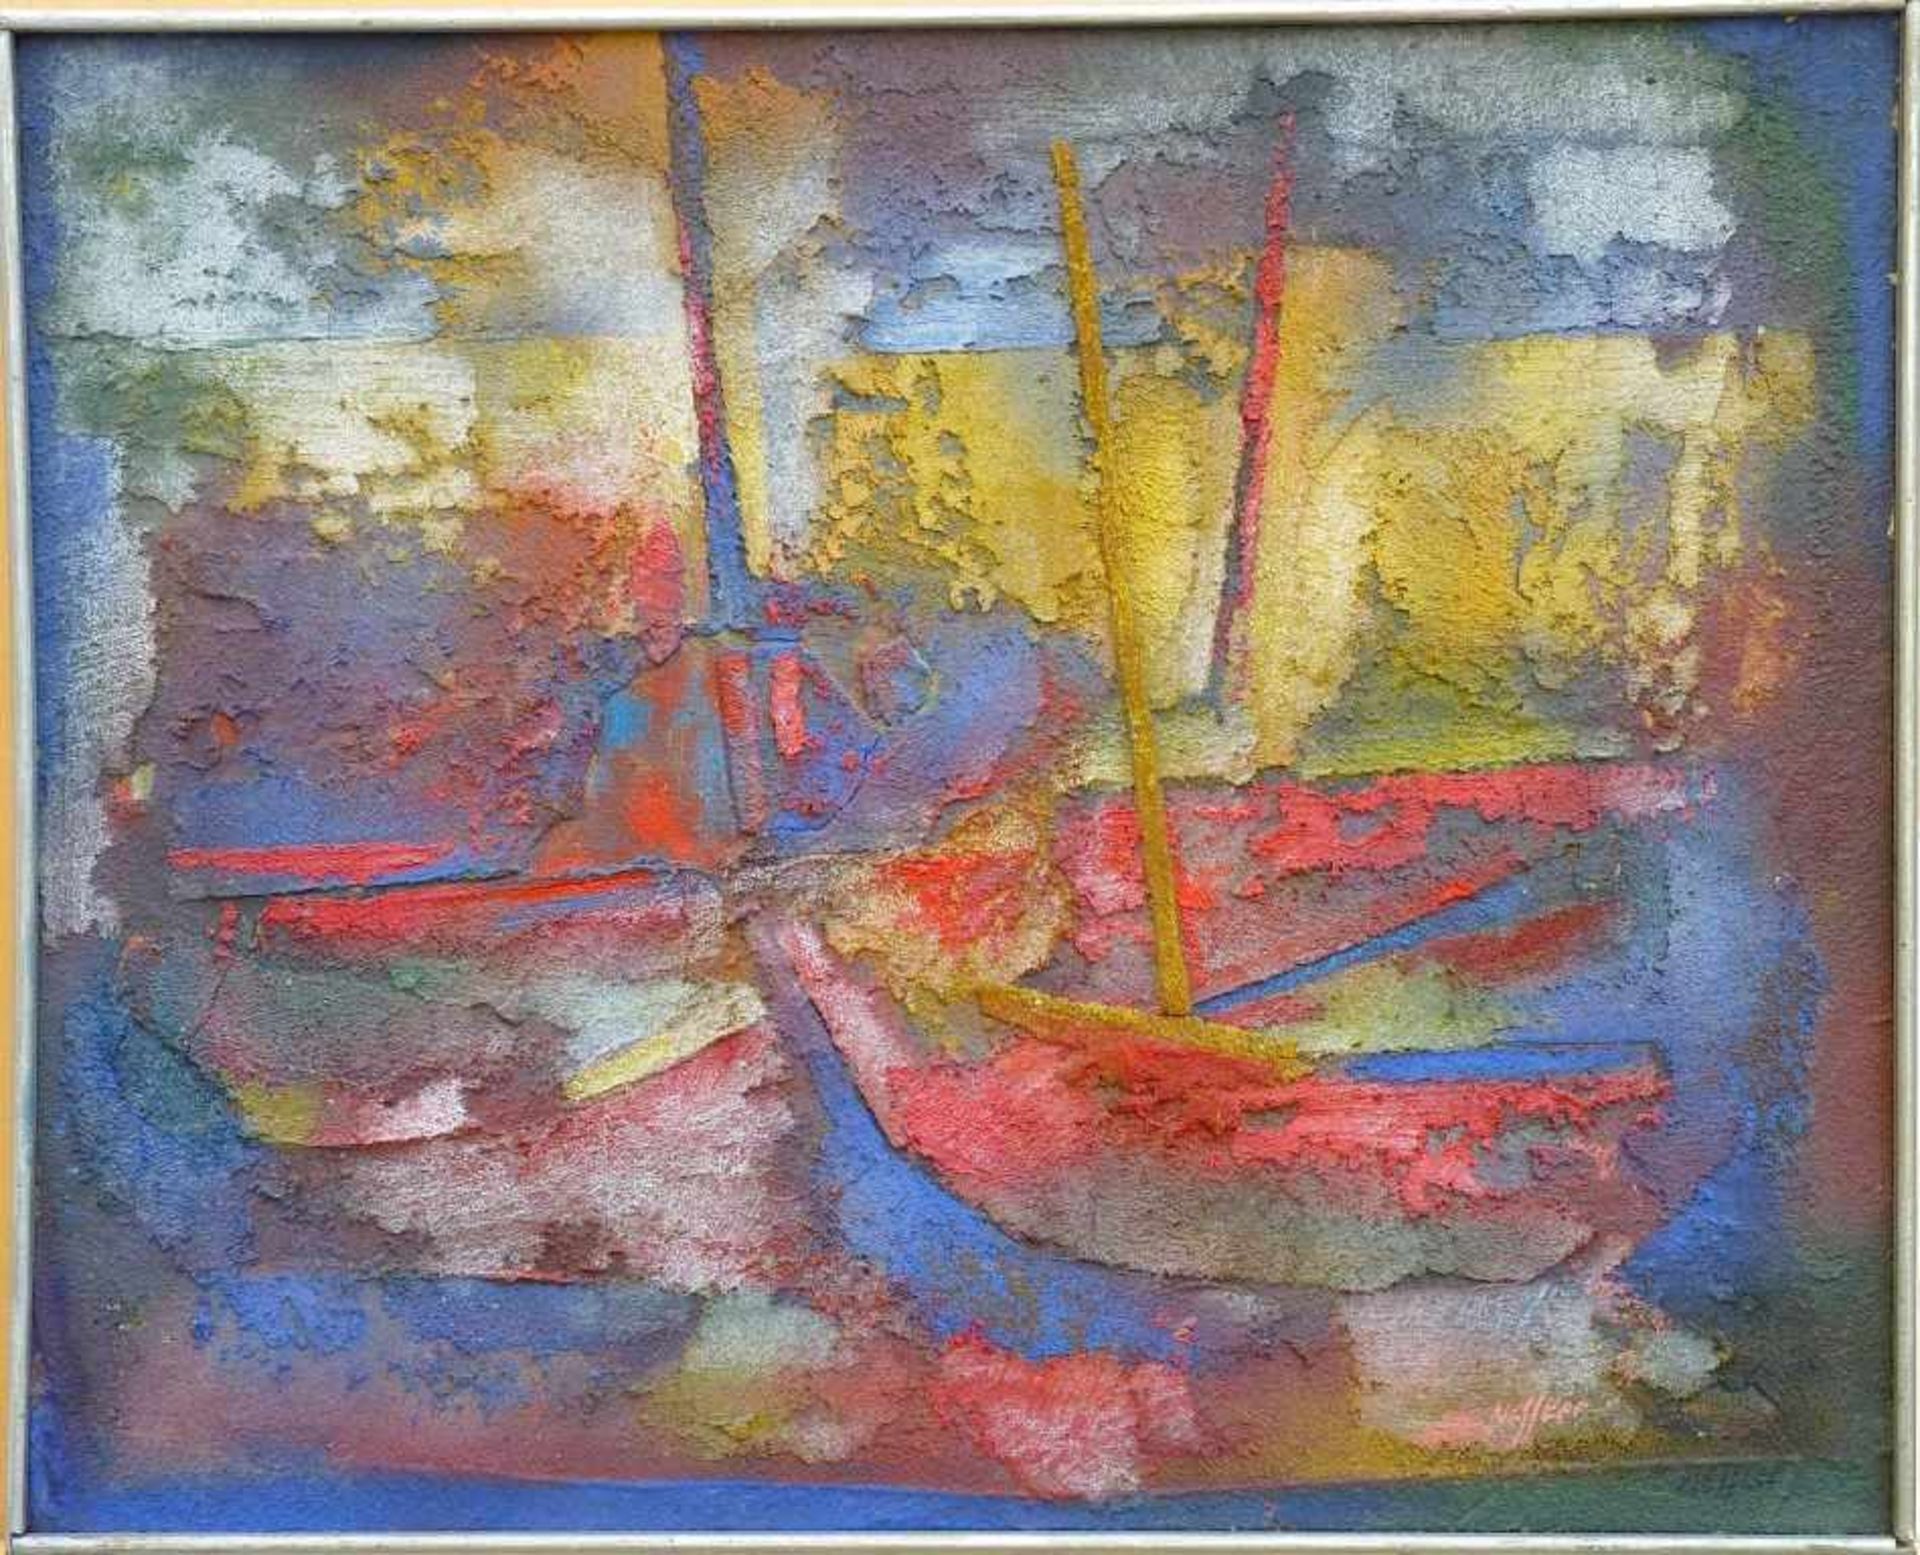 NESSLER, WALTER: "Boats", 1961Öl und Sand auf Hartfaser39,5 x 49,0 cmverso signiert, datiert,